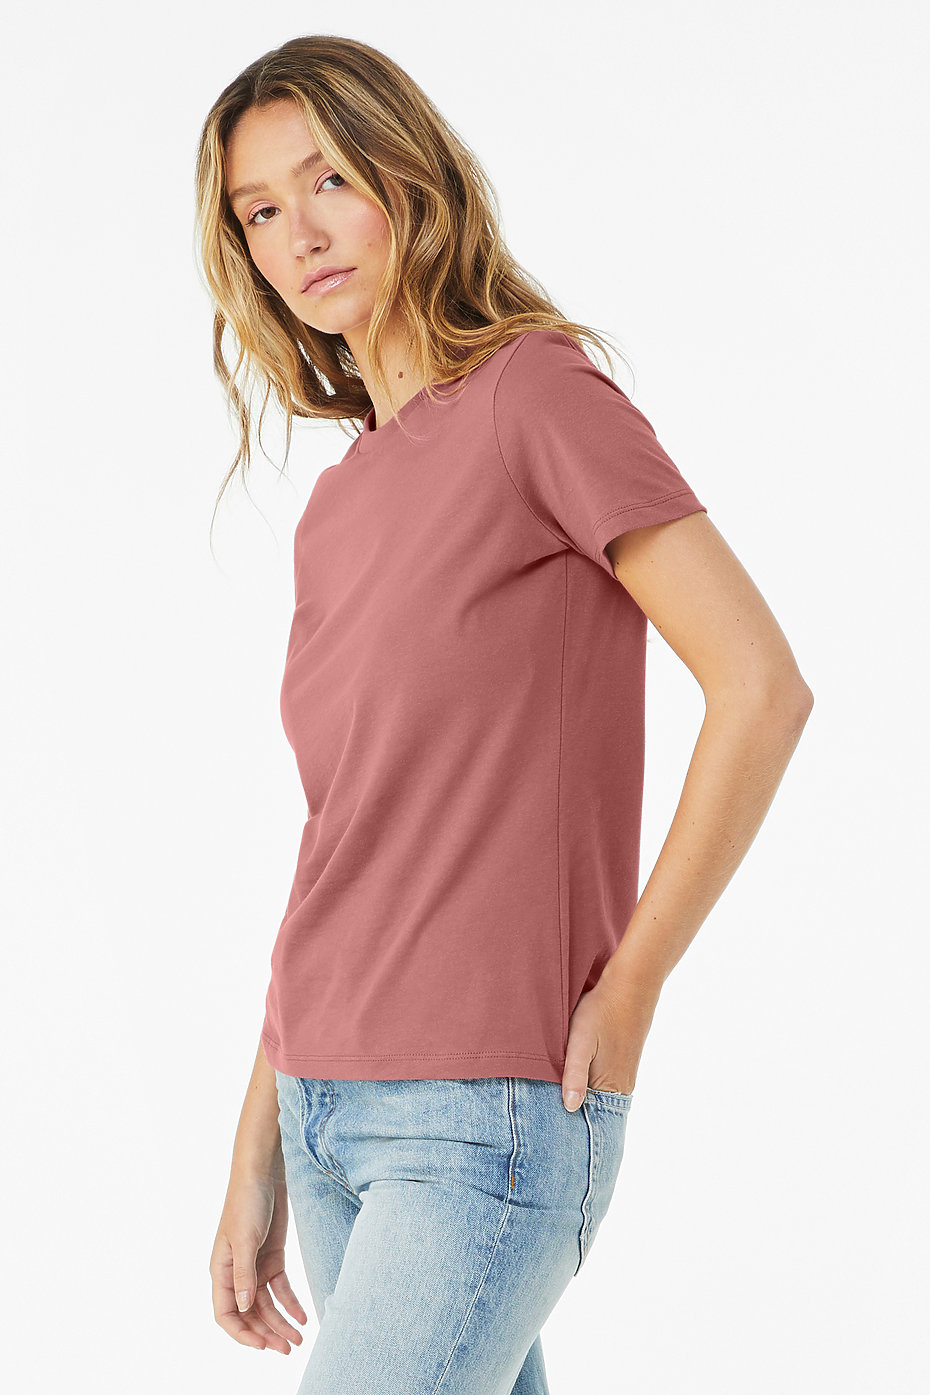 Plain Jersey T Shirts, Wholesale Jersey T Shirts